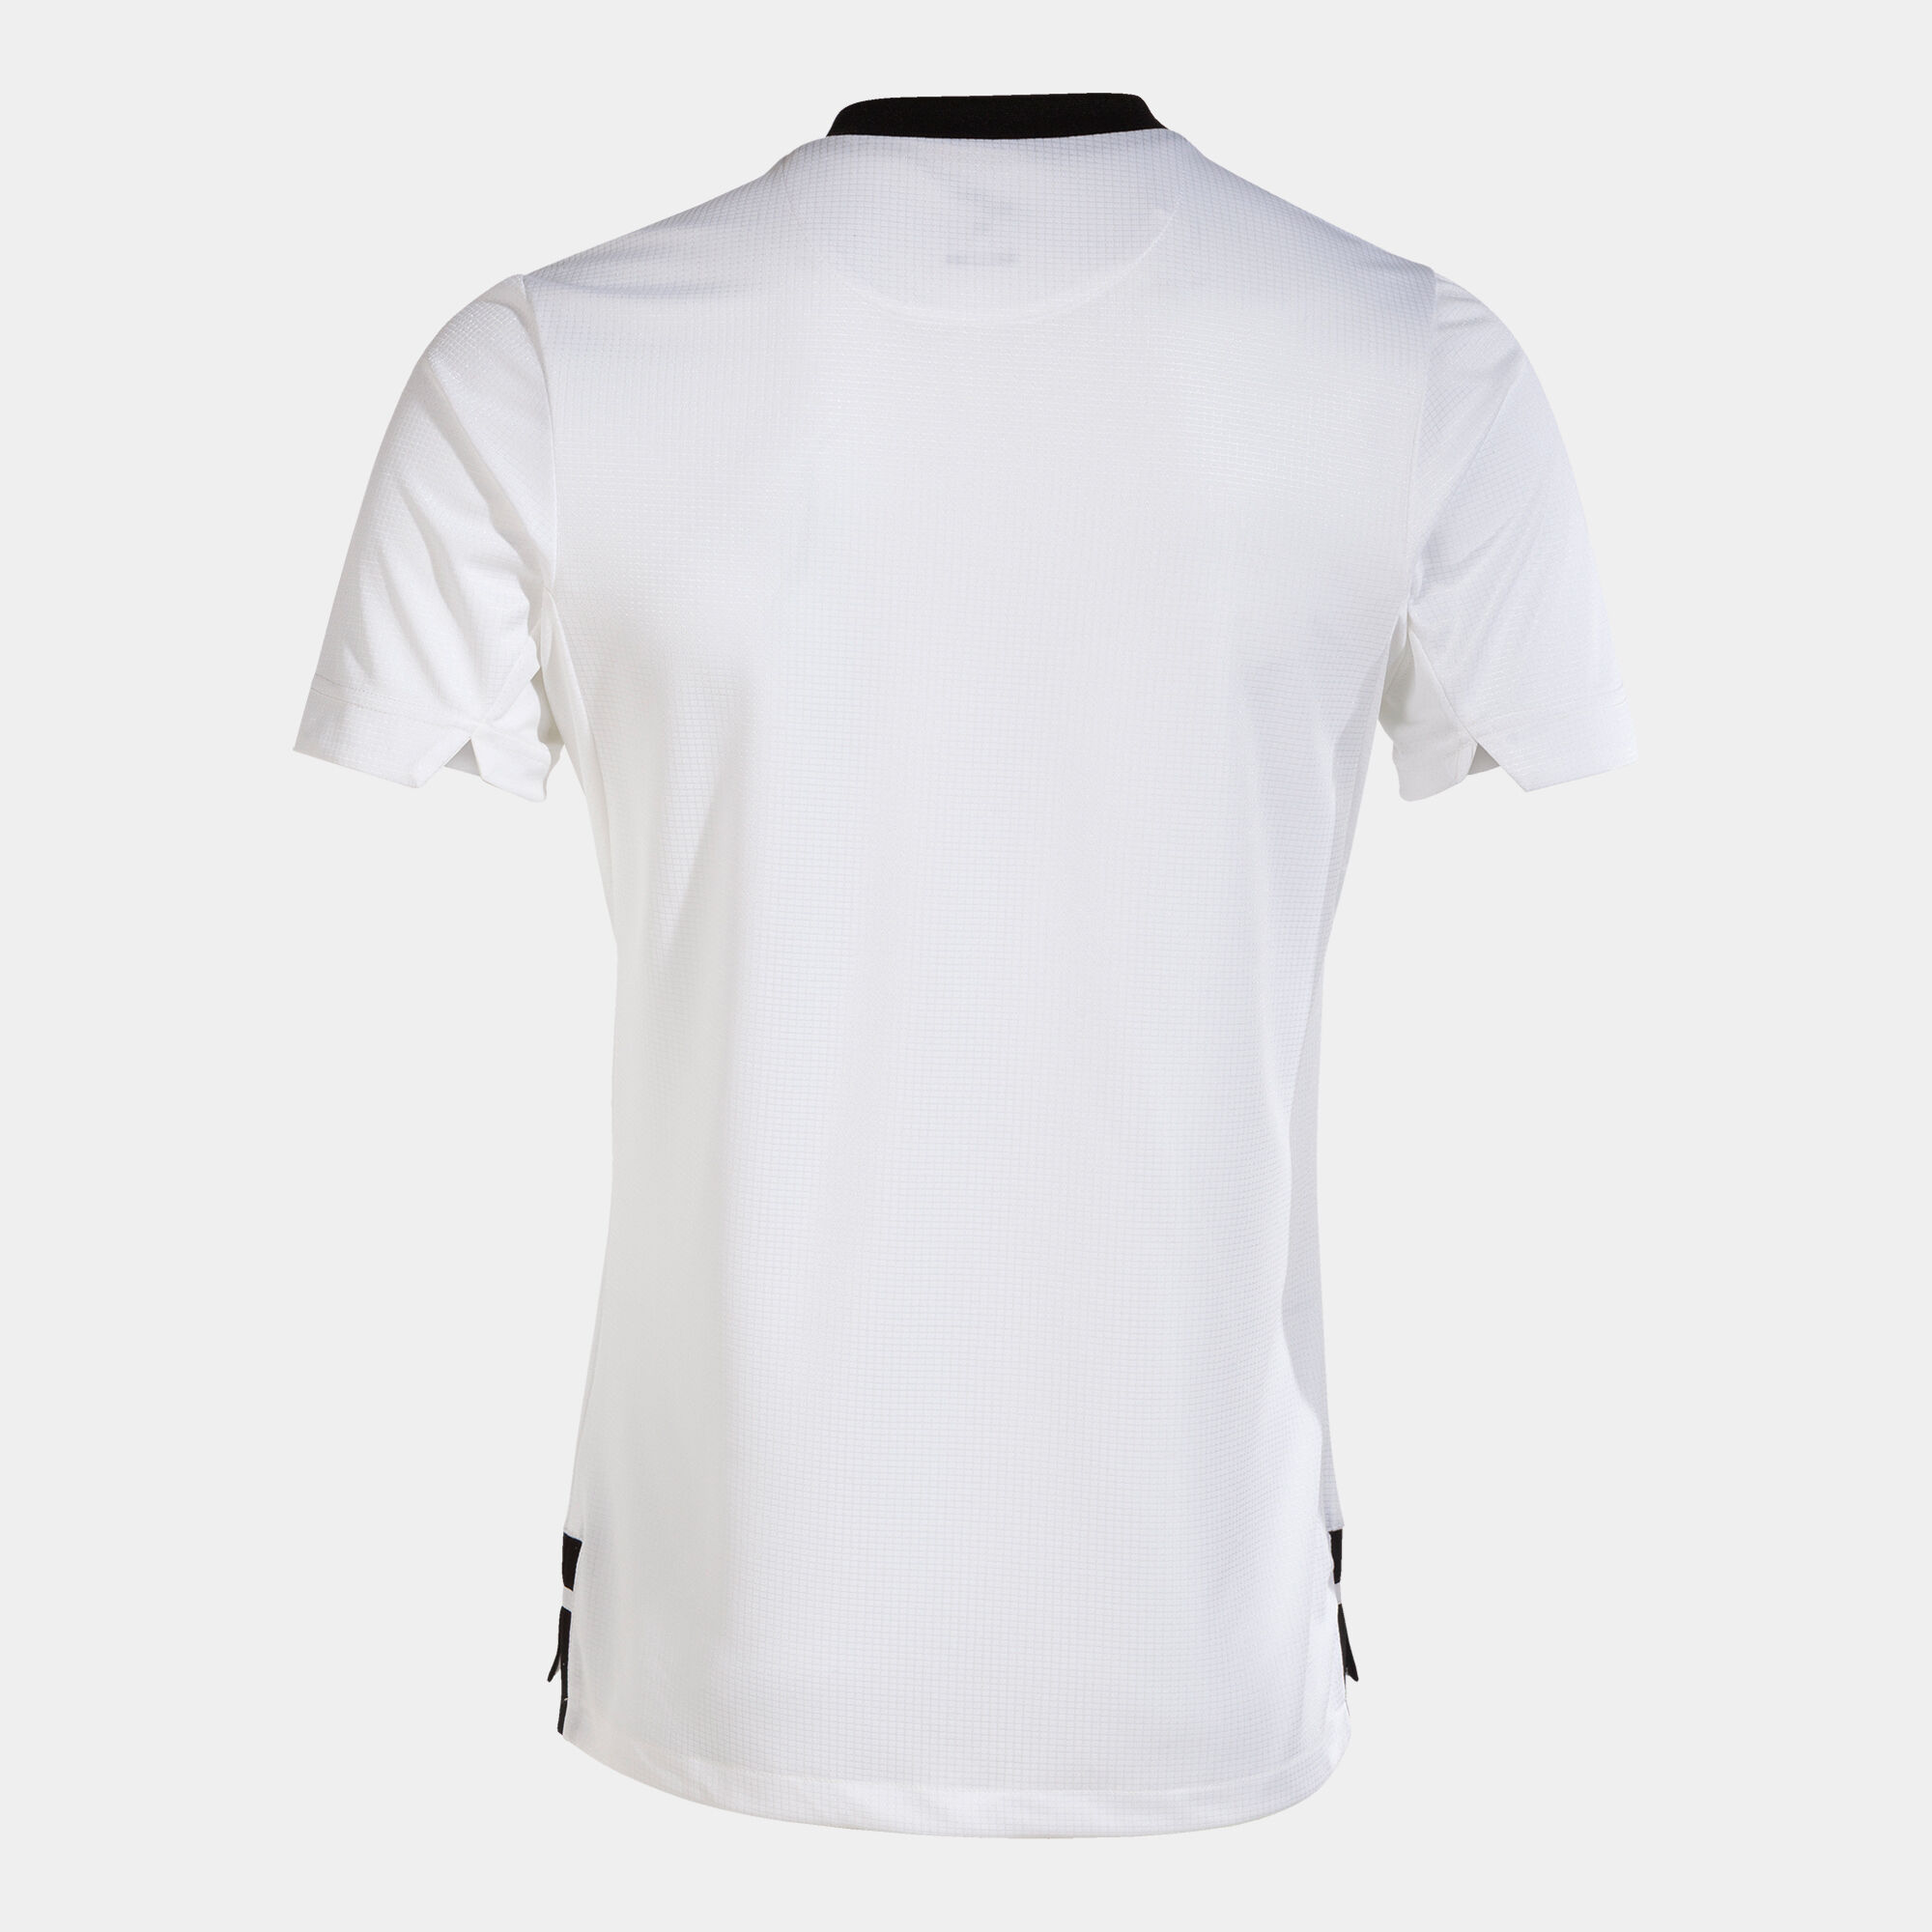 Koszulka z krótkim rękawem mężczyźni Ranking bialy czarny